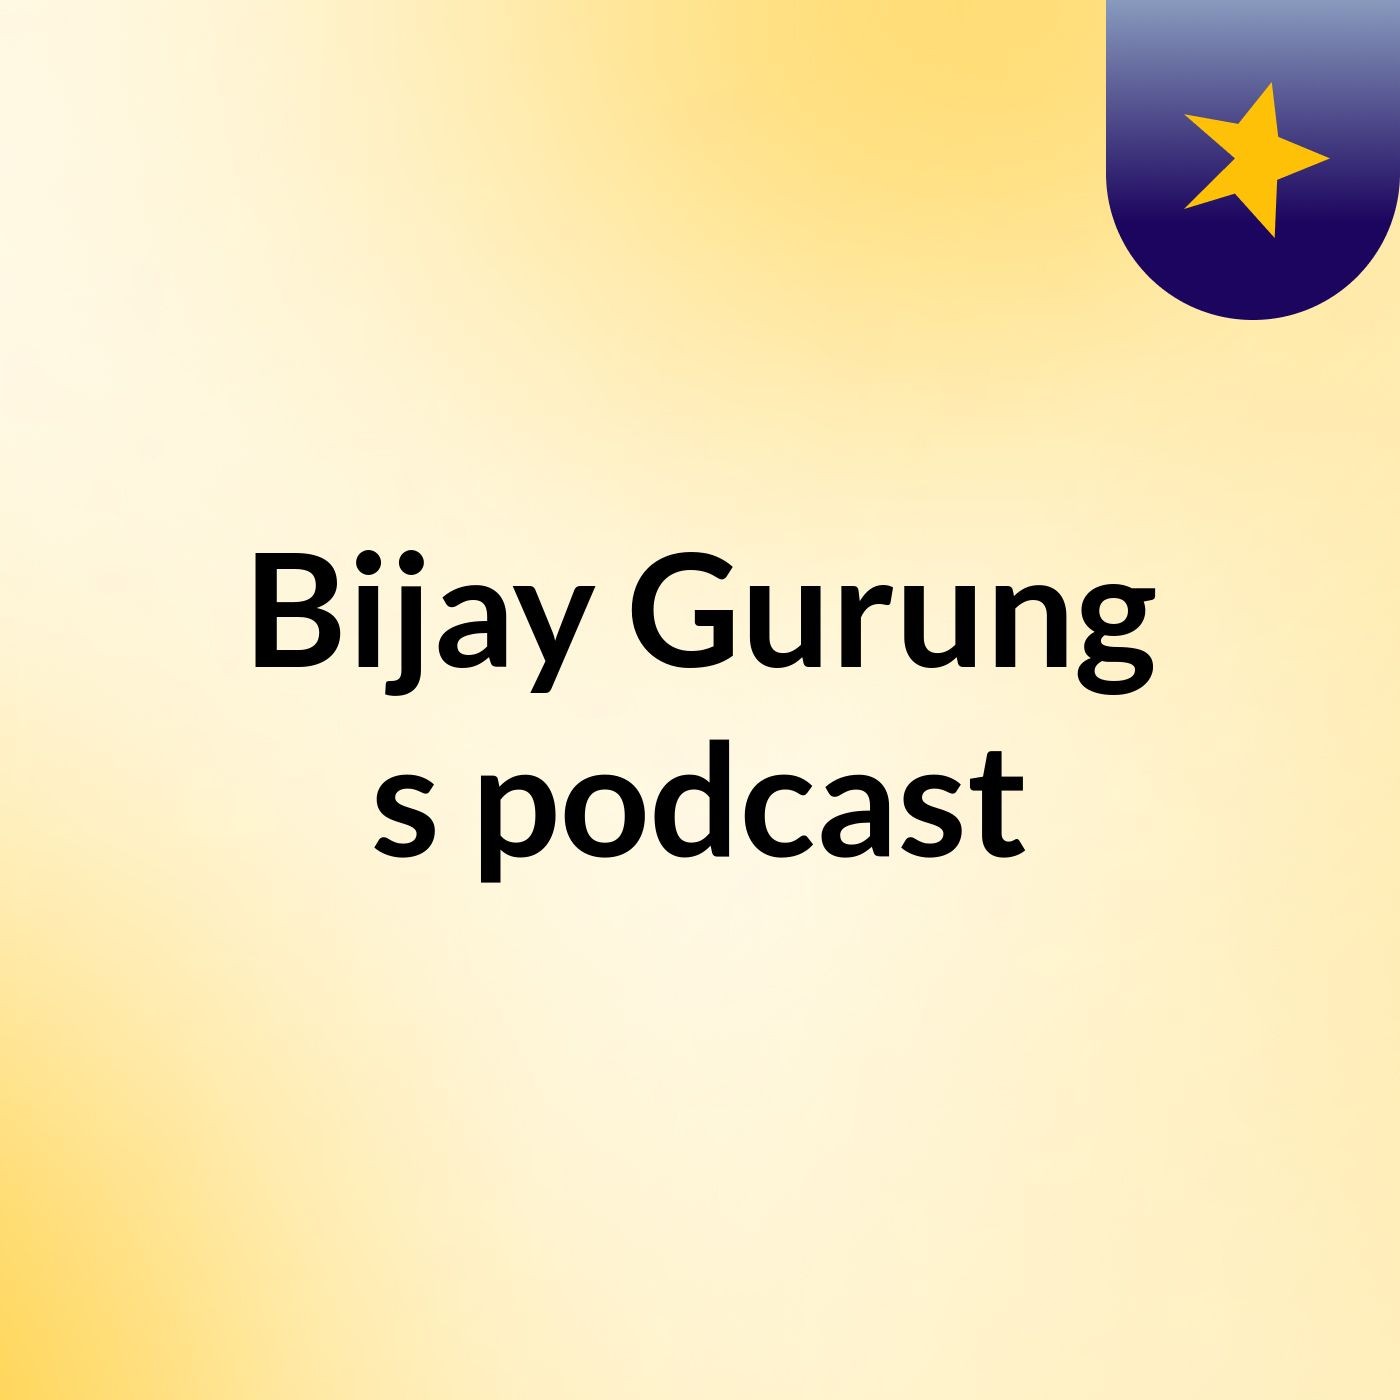 Episode 2 - Bijay Gurung's podcast